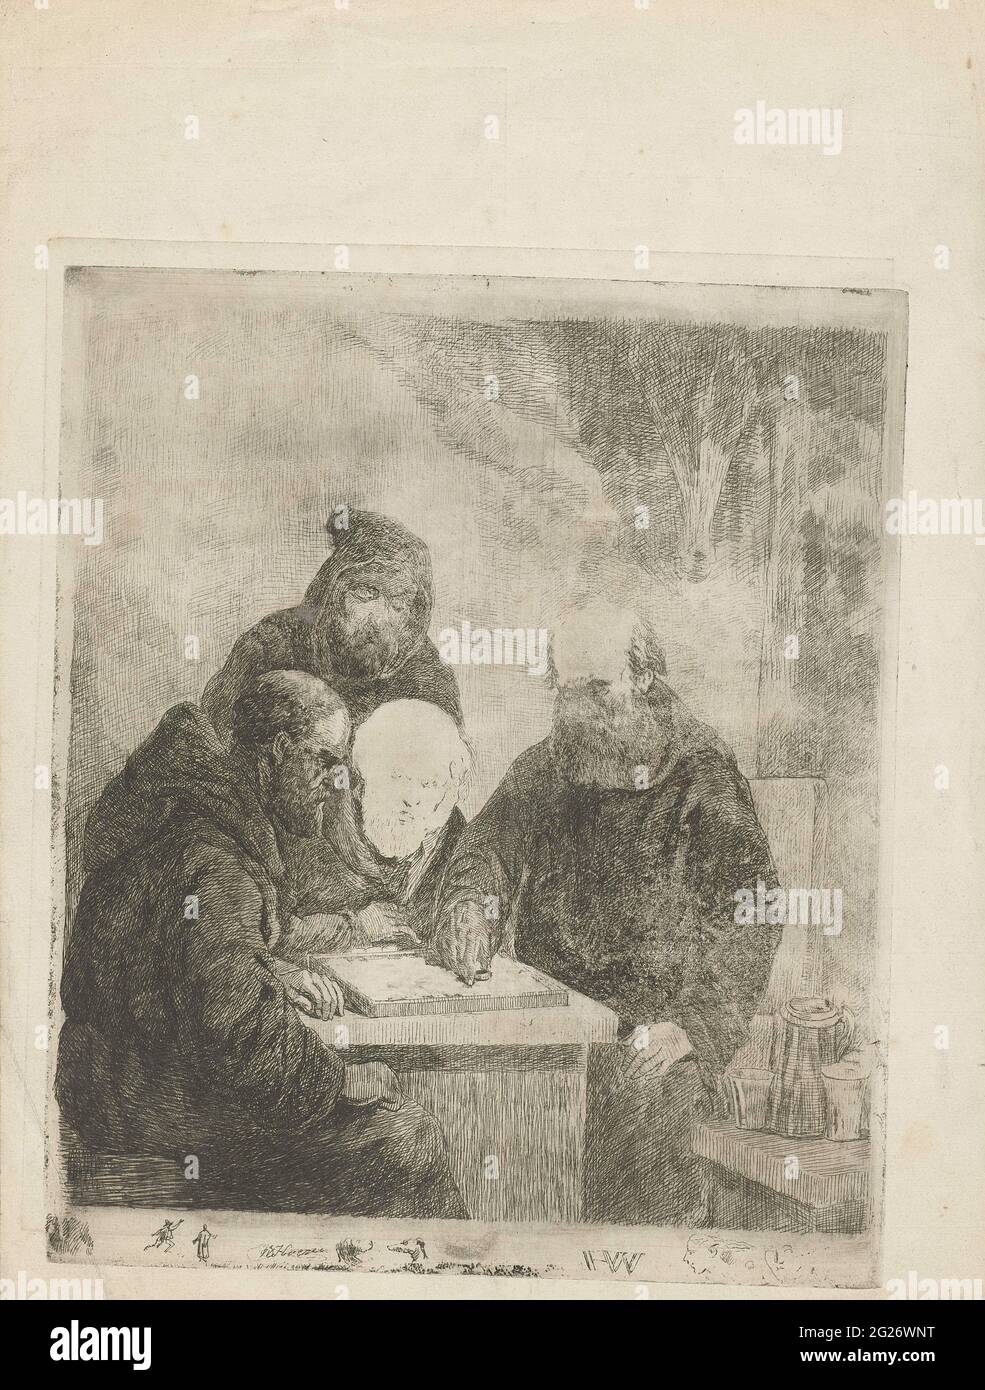 Los monjes humming. Cuatro monjes en un tablero de ajedrez. Mientras dos  monjes juegan un juego de presa, los otros dos miran. En la mesa junto a  los monjes hay una lata